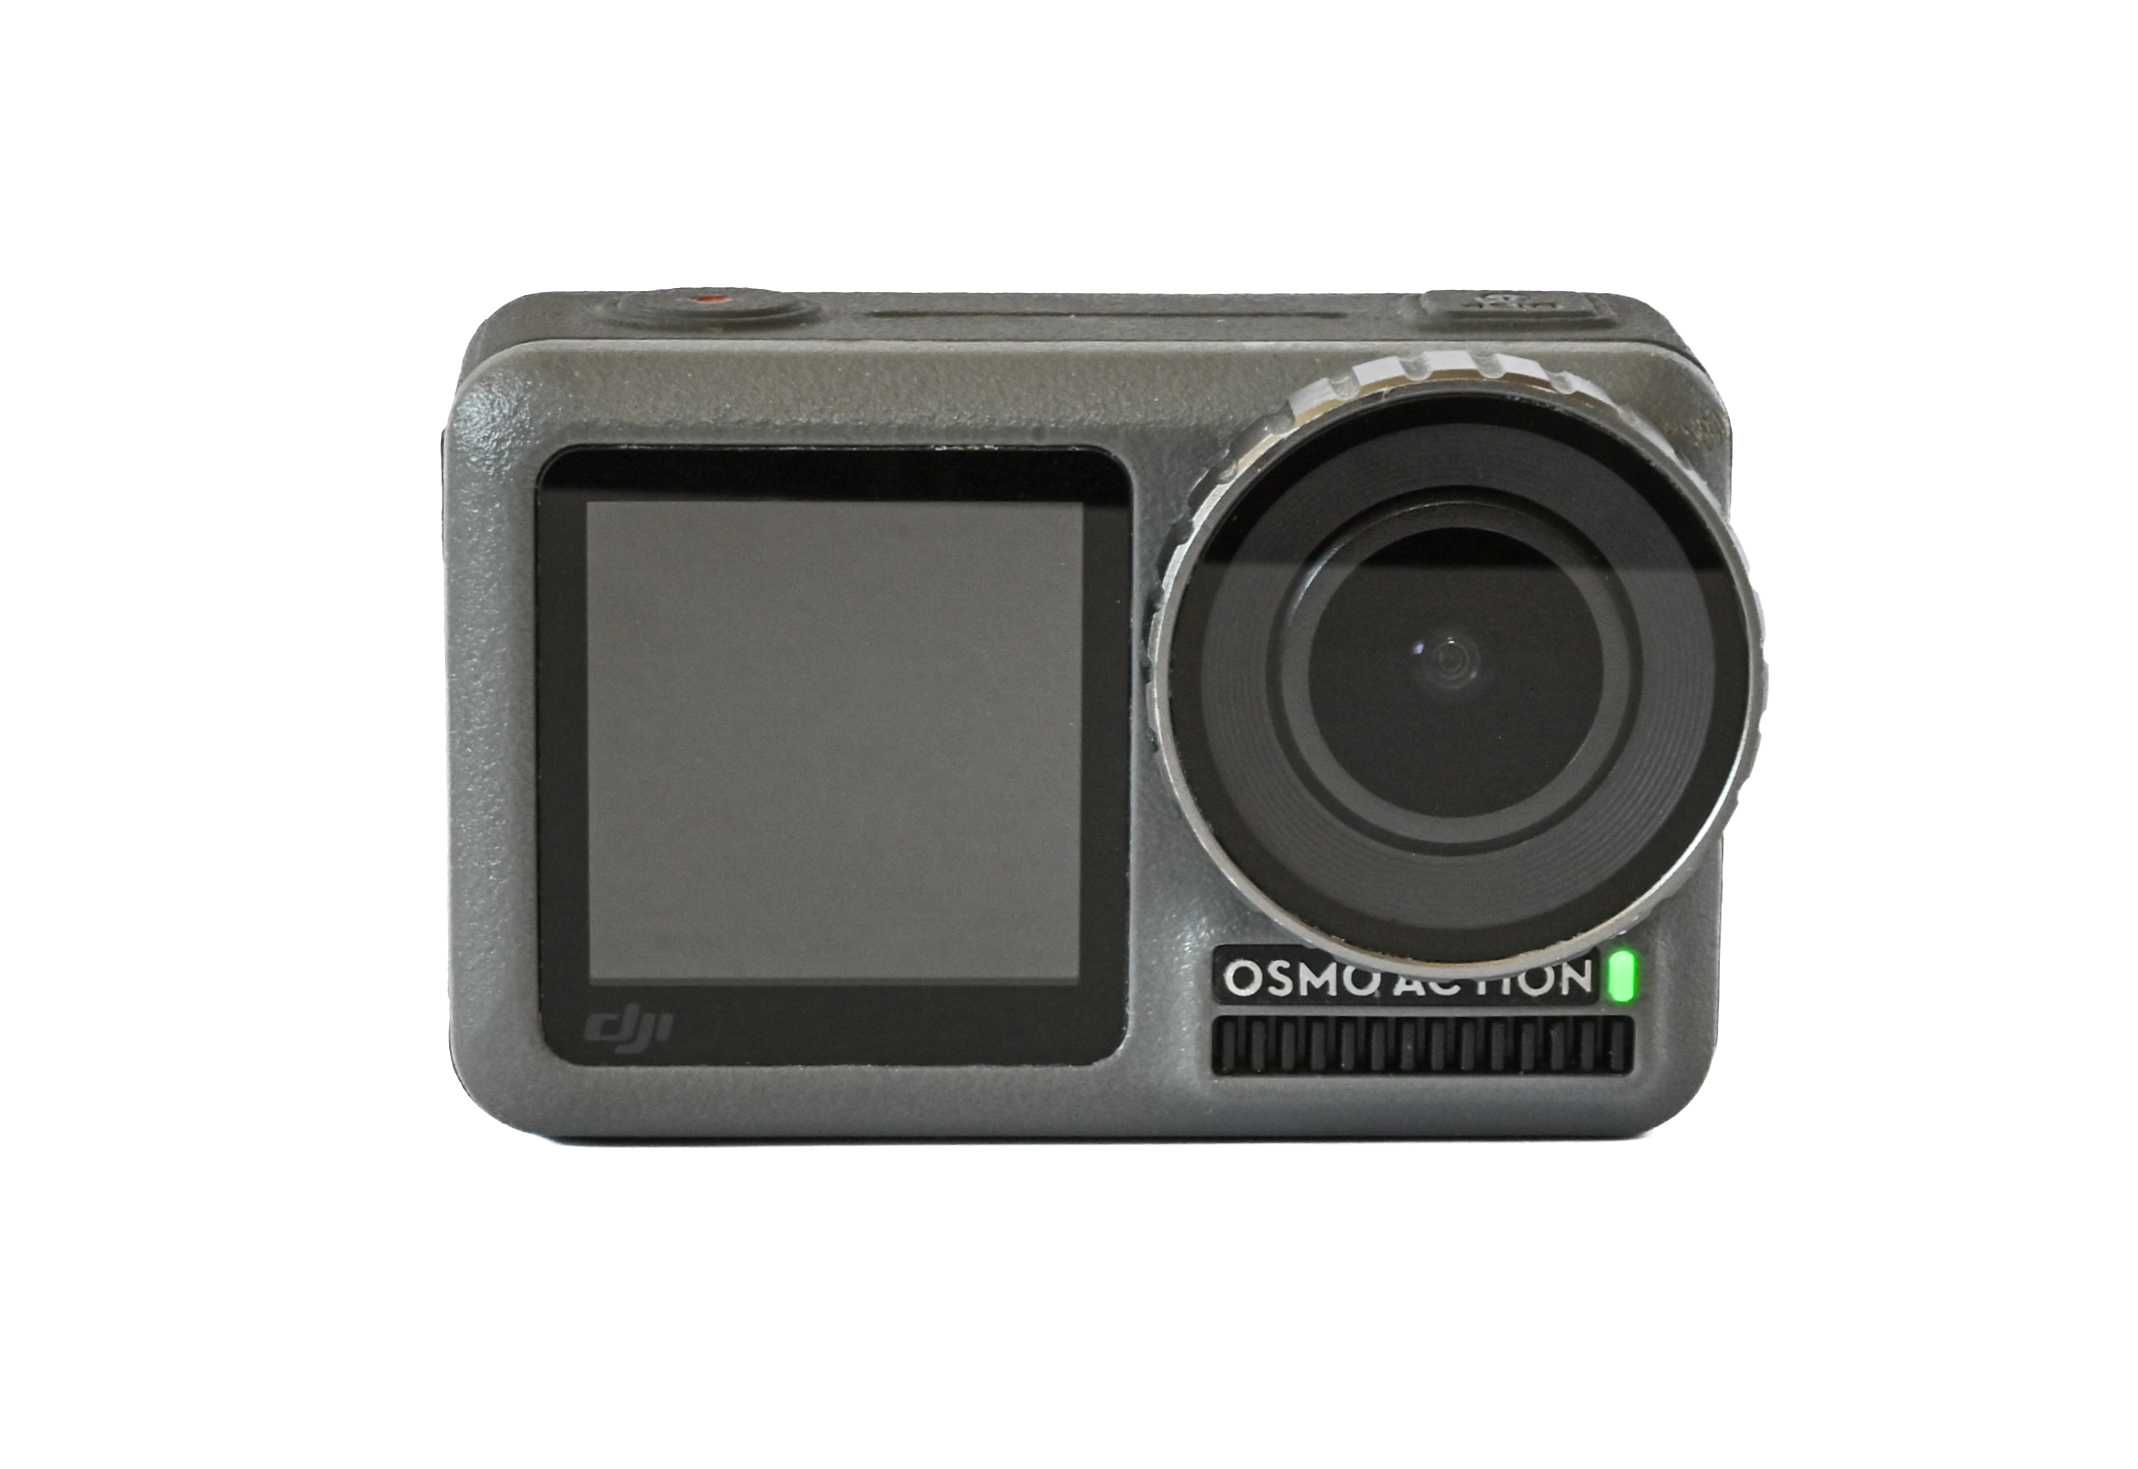 Vand camera DJI Osmo Action, 3 baterii, 3 filtre ND, maner scuba!